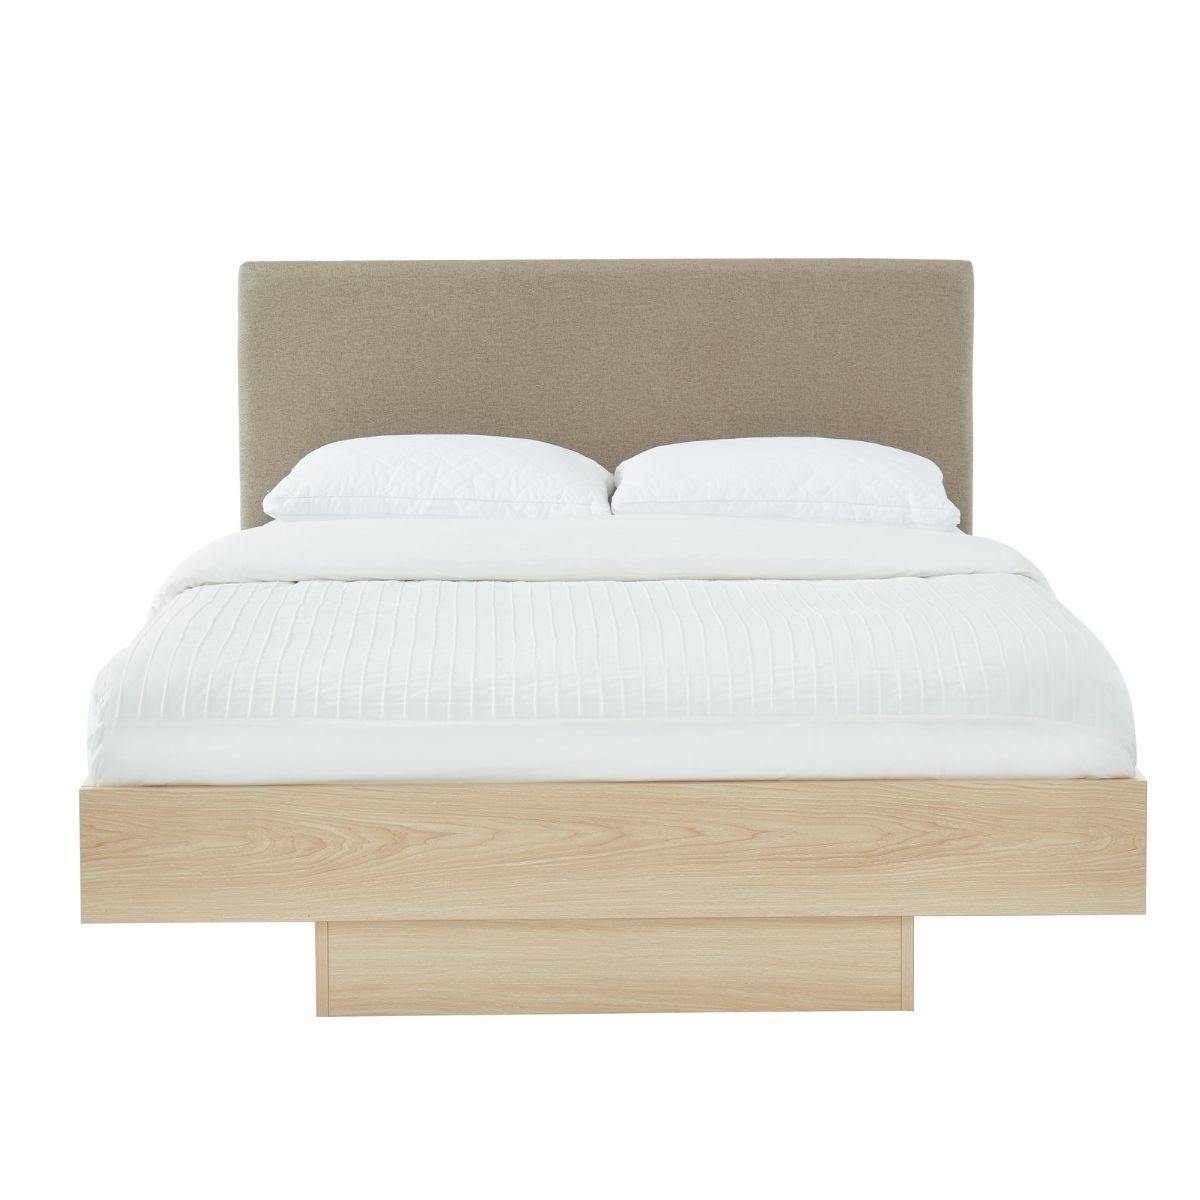 Natural Oak Wood Floating Bed Frame Queen - Evopia